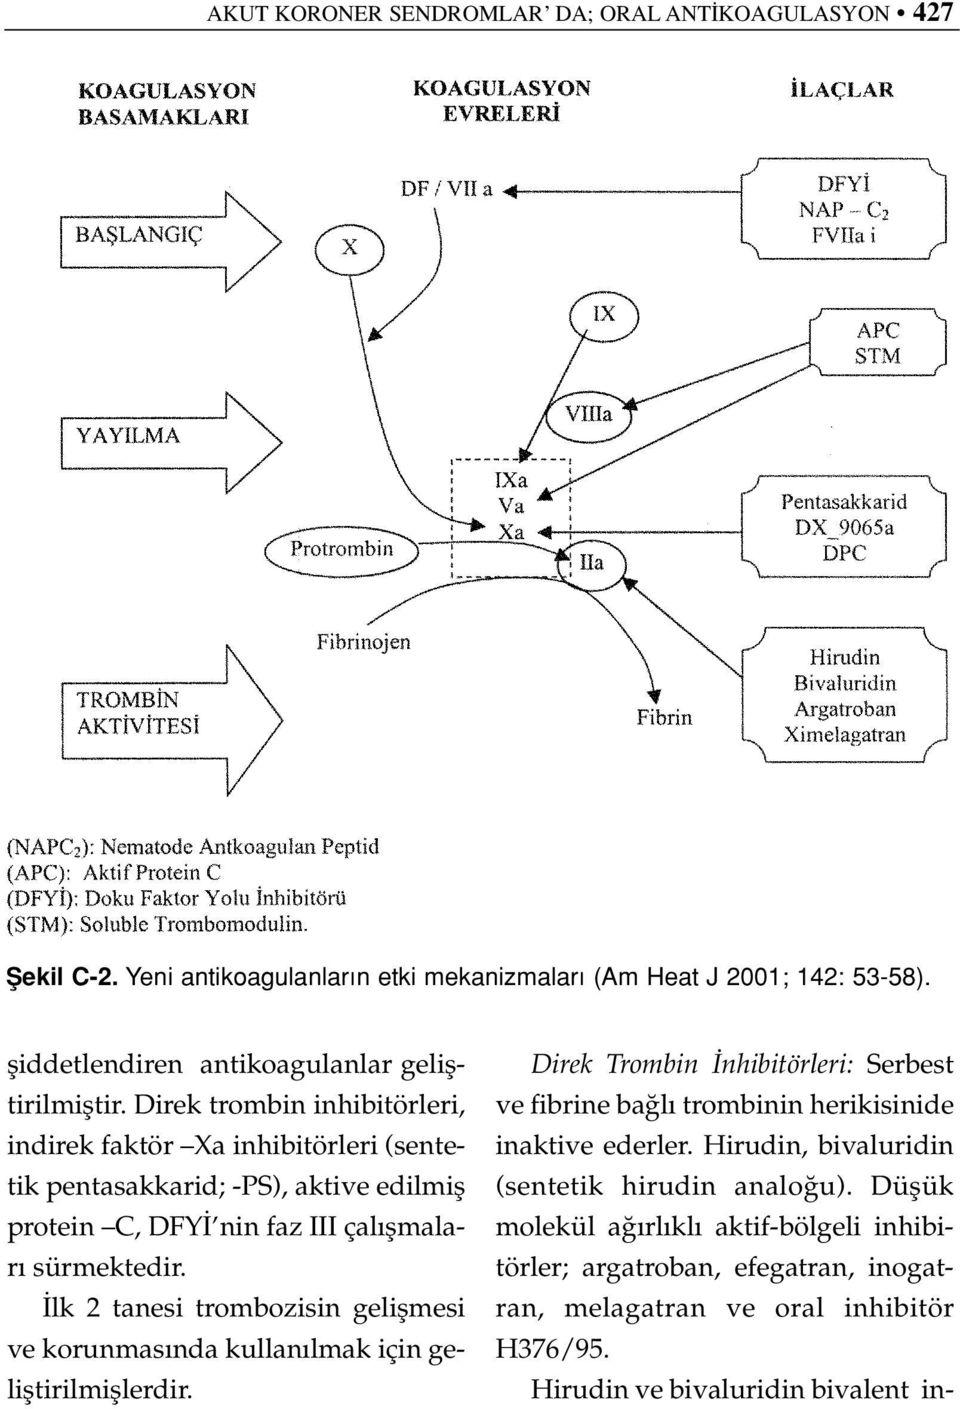 Direk trombin inhibitörleri, indirek faktör Xa inhibitörleri (sentetik pentasakkarid; -PS), aktive edilmifl protein C, DFY nin faz III çal flmalar sürmektedir.